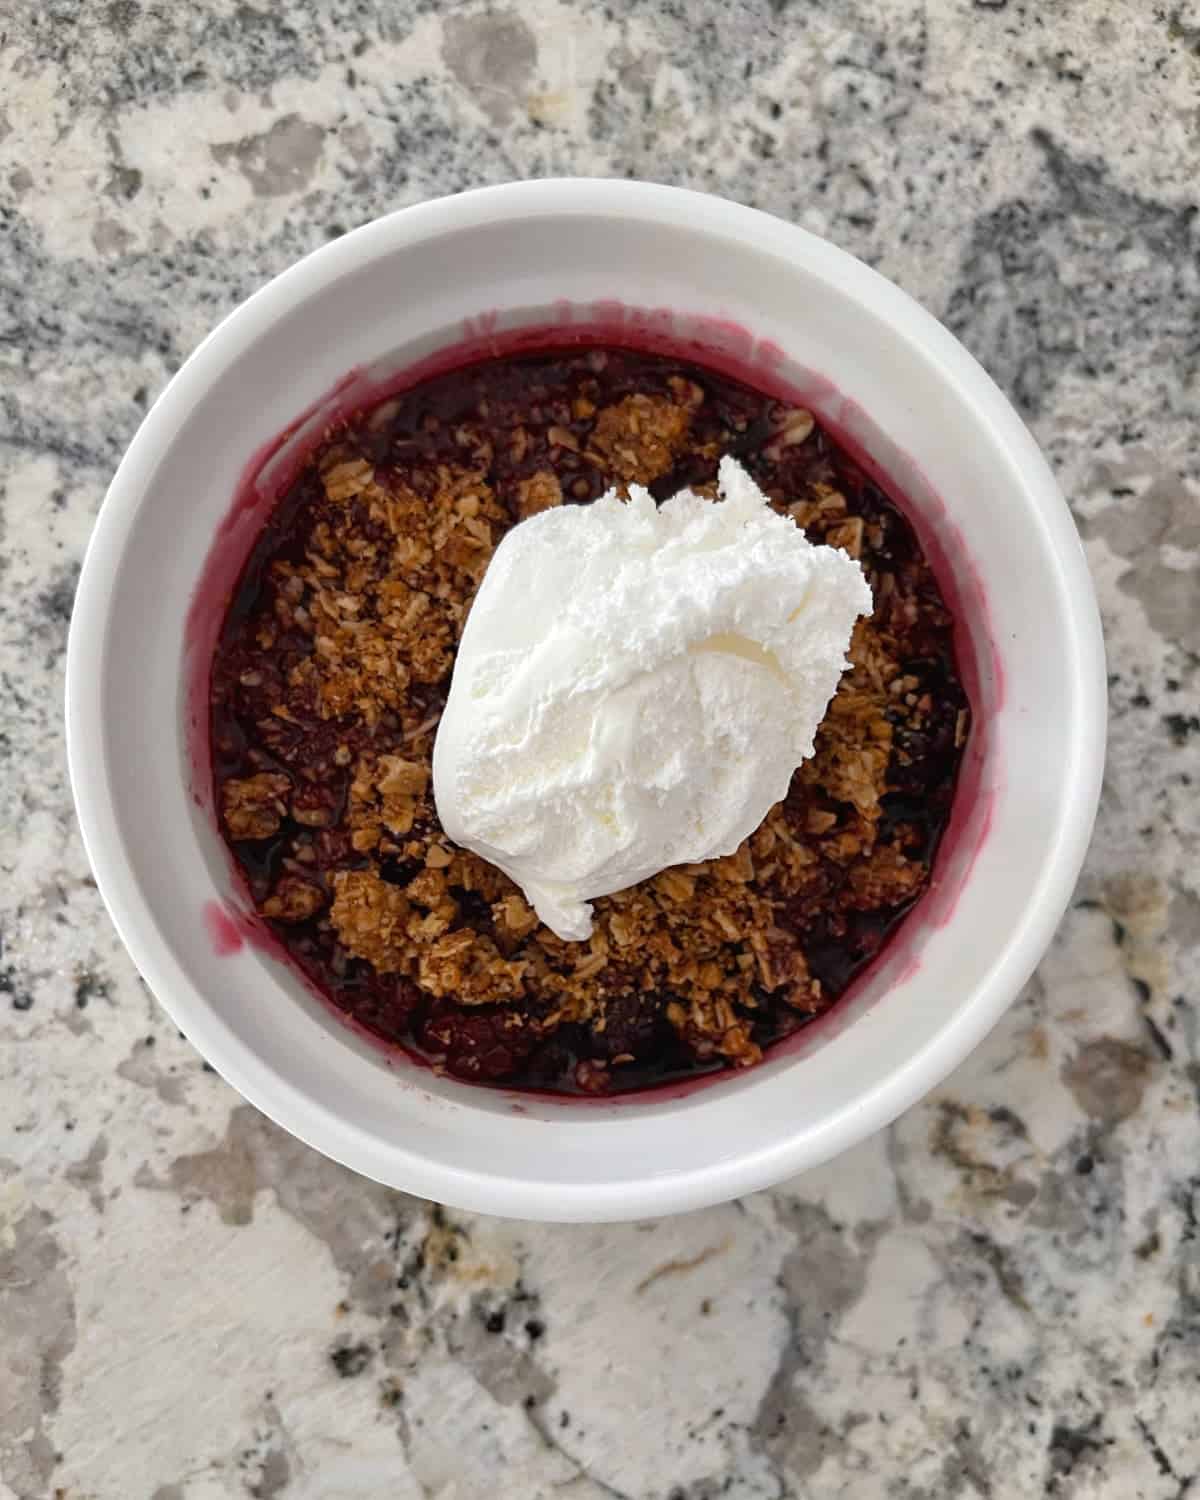 Easy blackberry crisp topped with lite whipped cream in white ramekin.